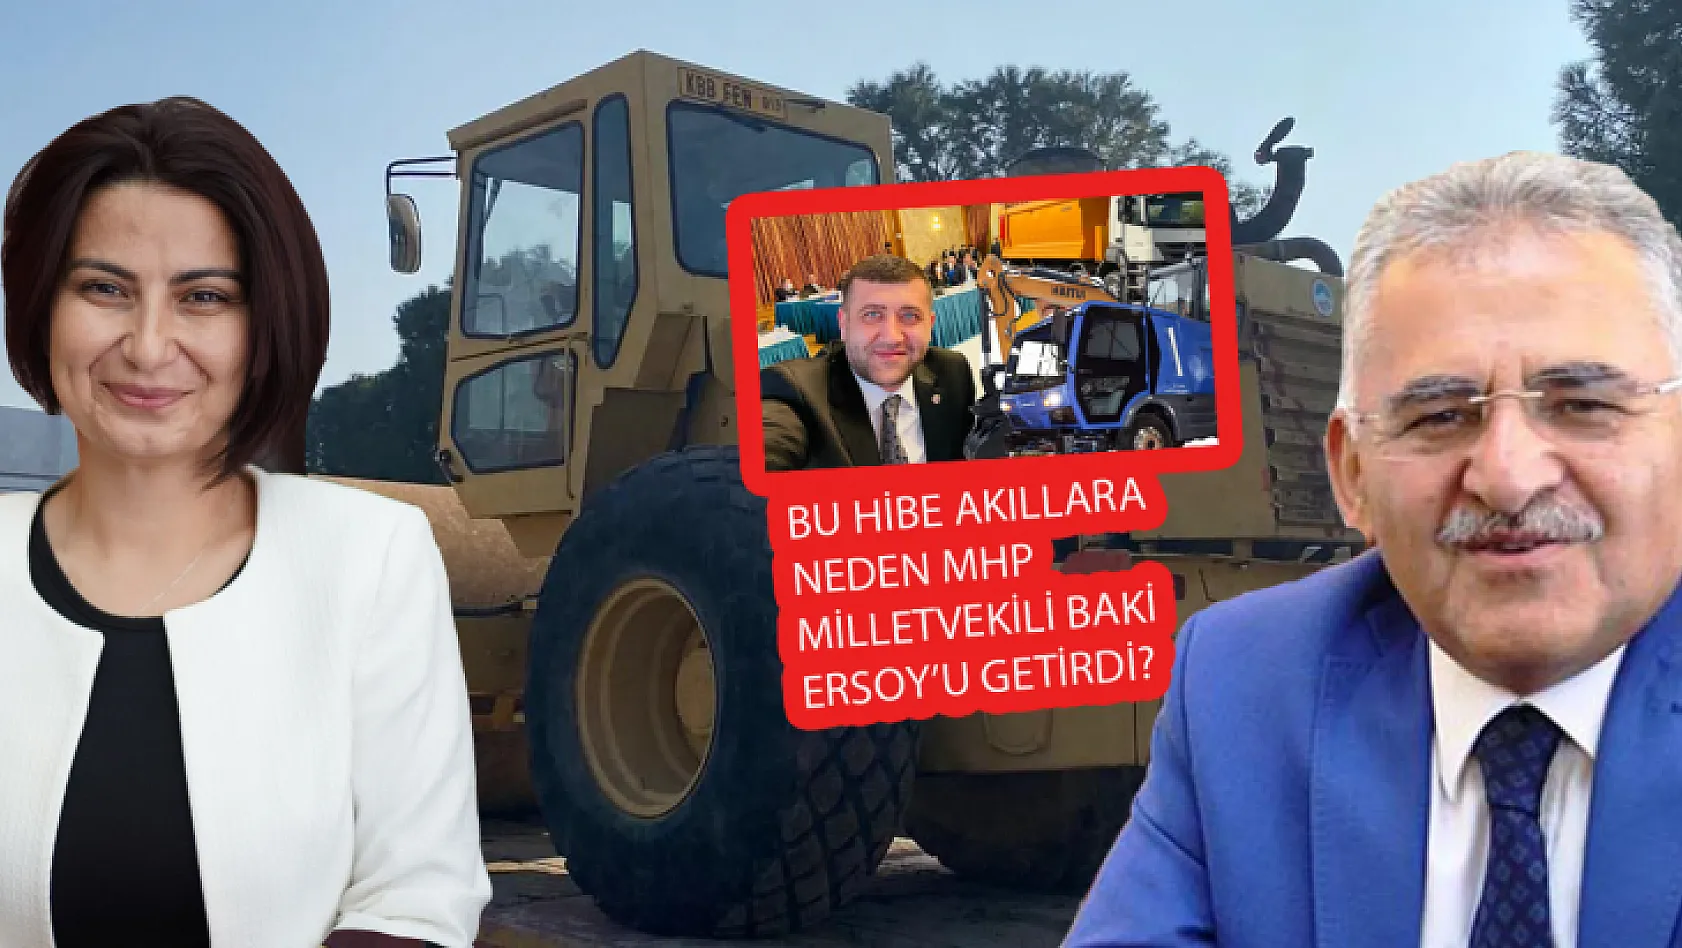 Büyükşehir Belediyesi, İzmir Kiraz Belediyesi'ne araç hibe etti! Akıllara neden MHP'li Ersoy geldi?